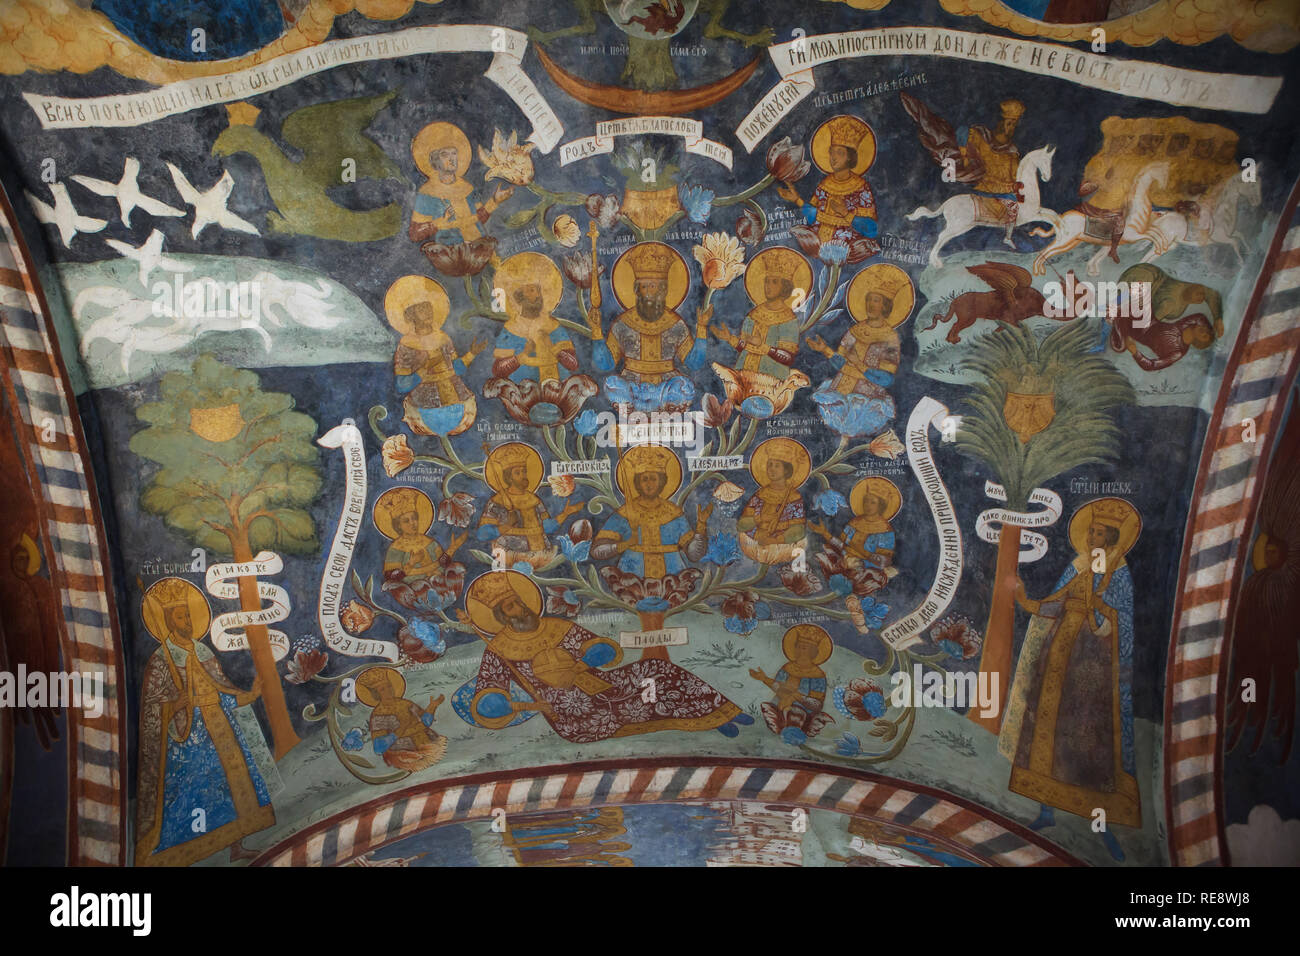 Arbre généalogique des tsars russes décrite dans le représenté dans la fresque au plafond par icône russe peintres Gury Nikitin et Sila Savin (1680) dans le nord porche de l'Église du prophète Élie à Iaroslavl, Russie. Banque D'Images